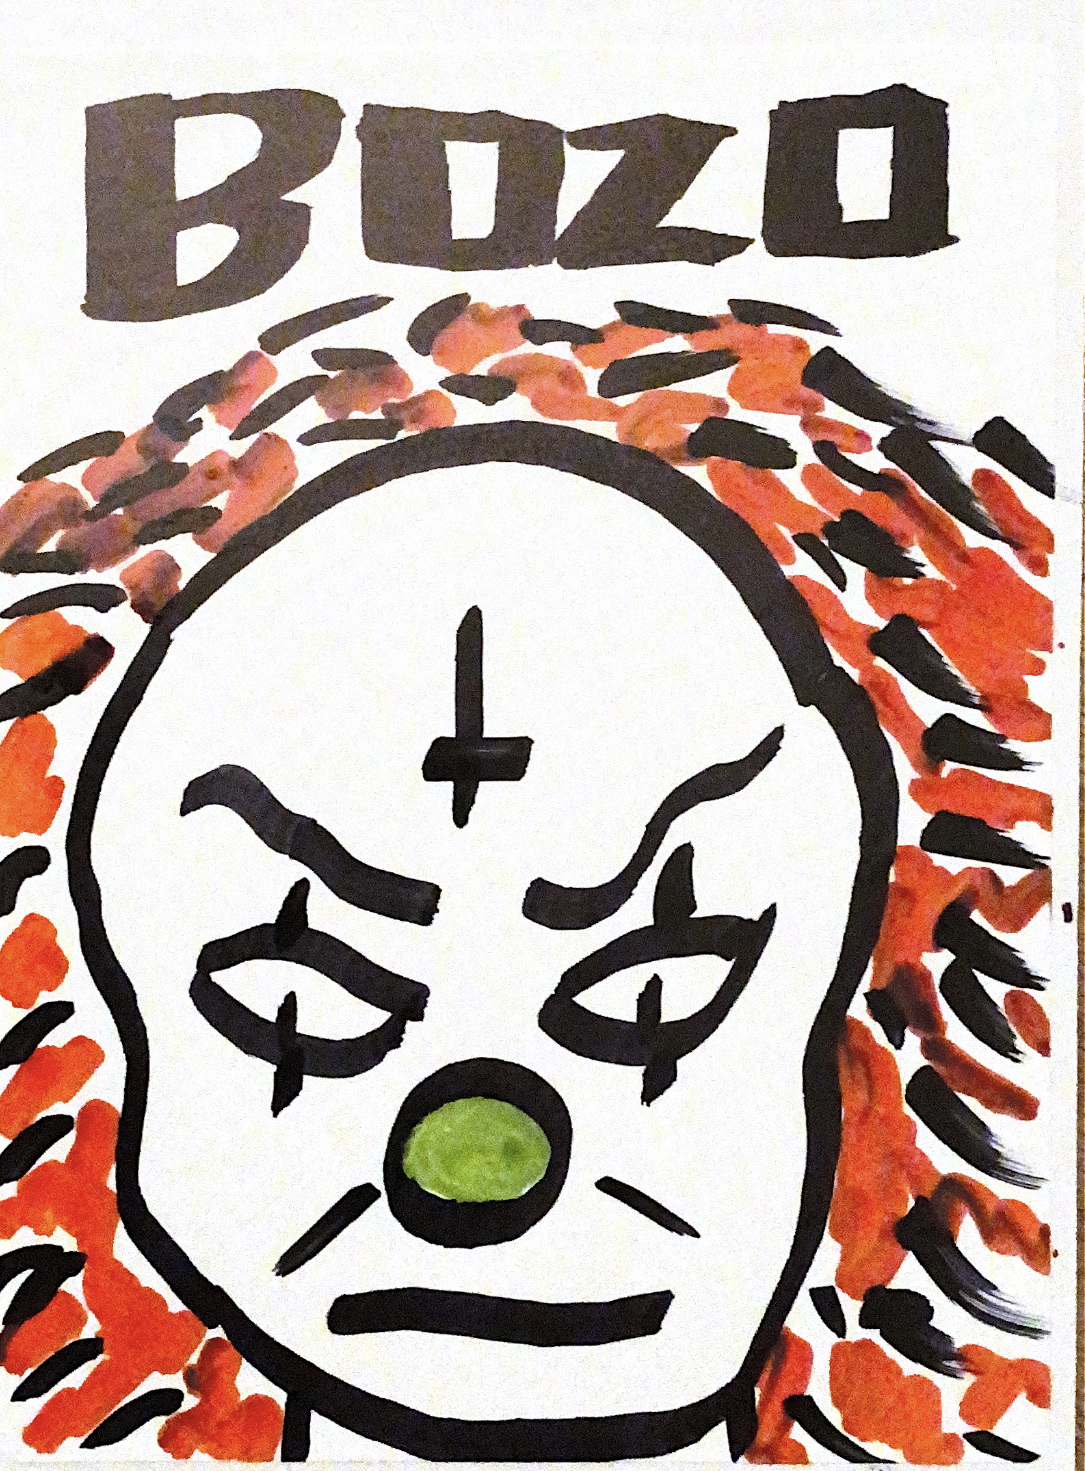 Bozo Sticker, marker.